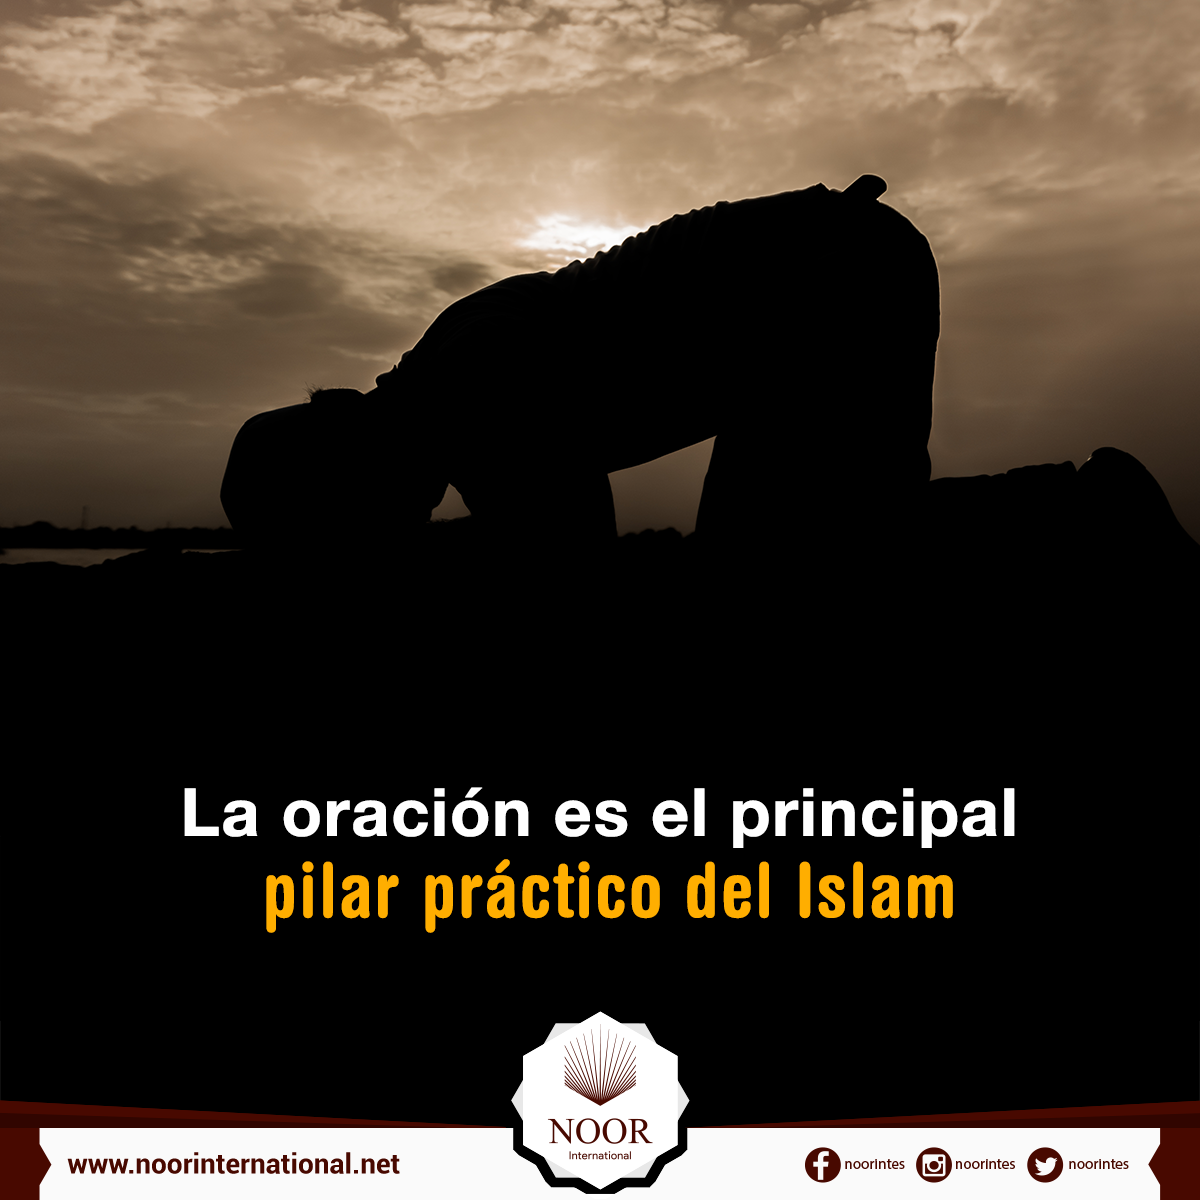 La oración es el principal pilar práctico del Islam